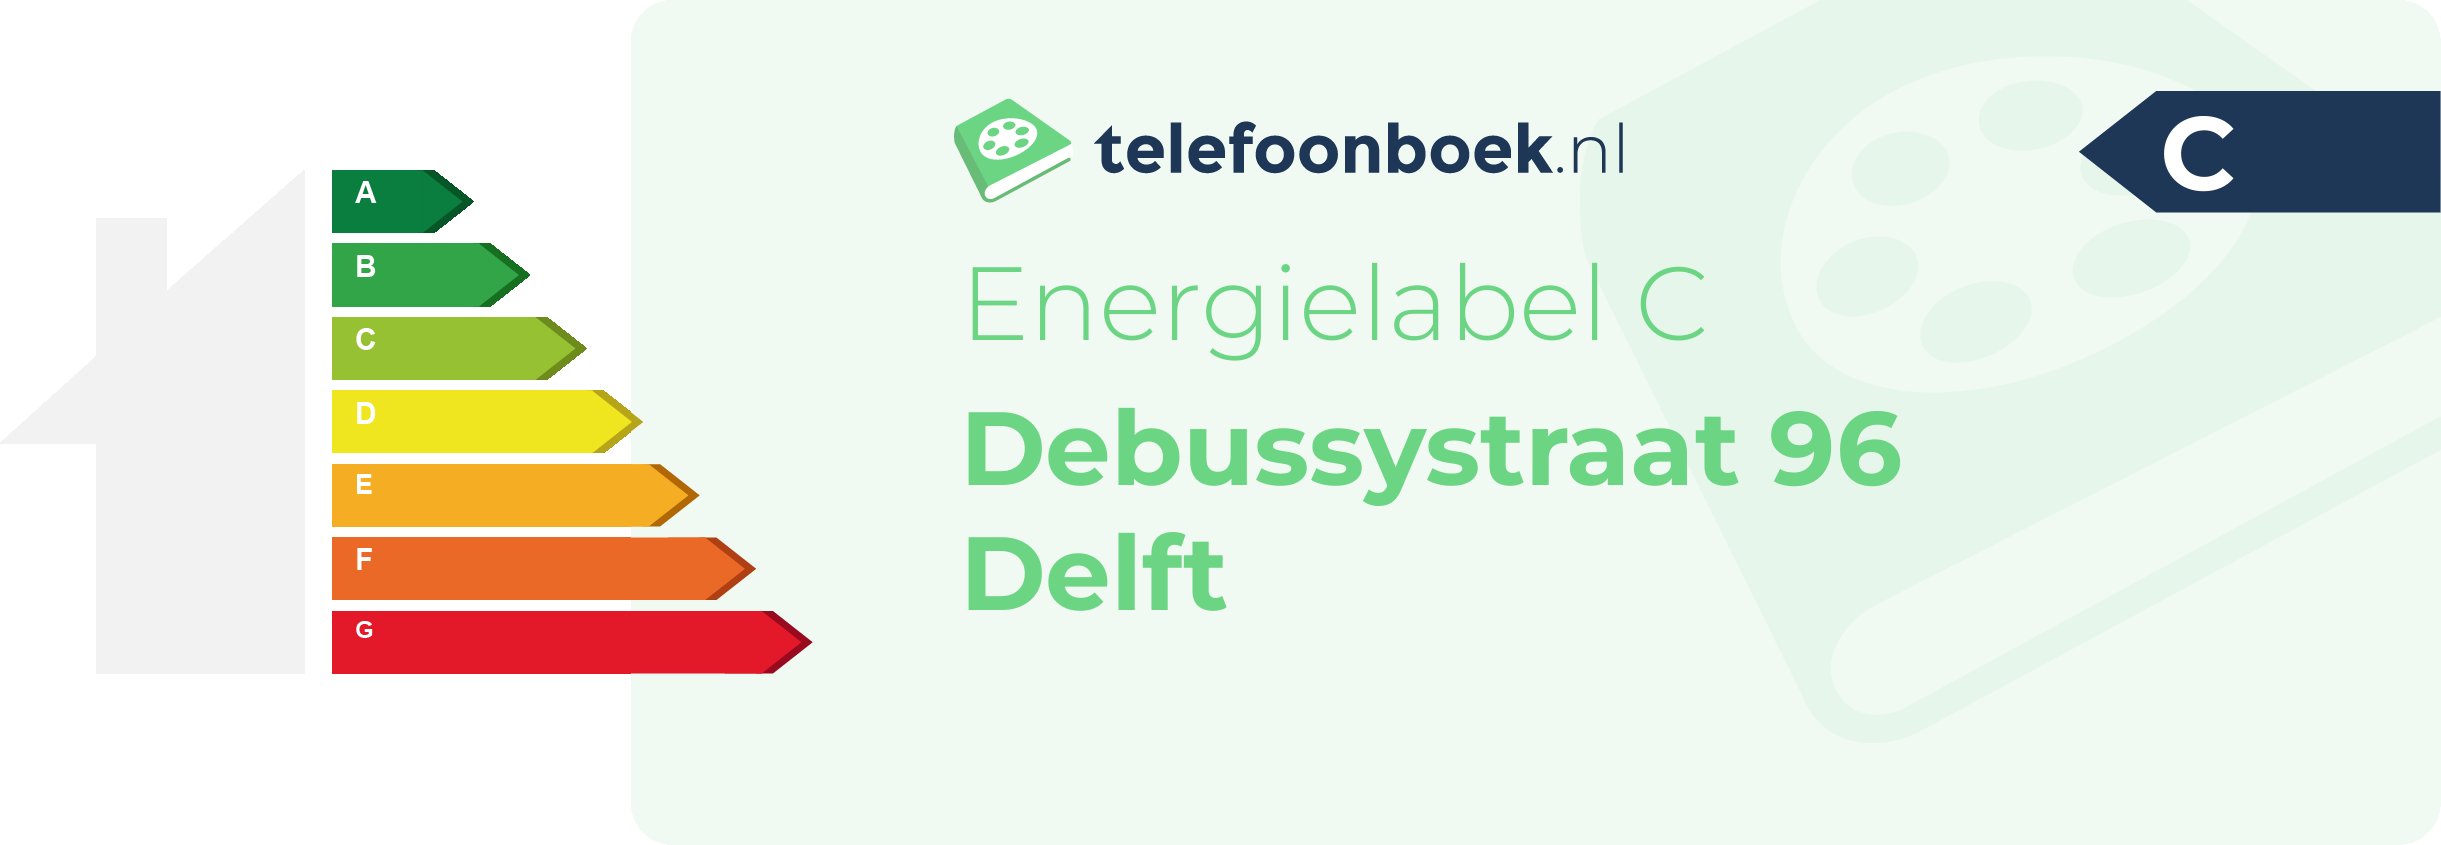 Energielabel Debussystraat 96 Delft